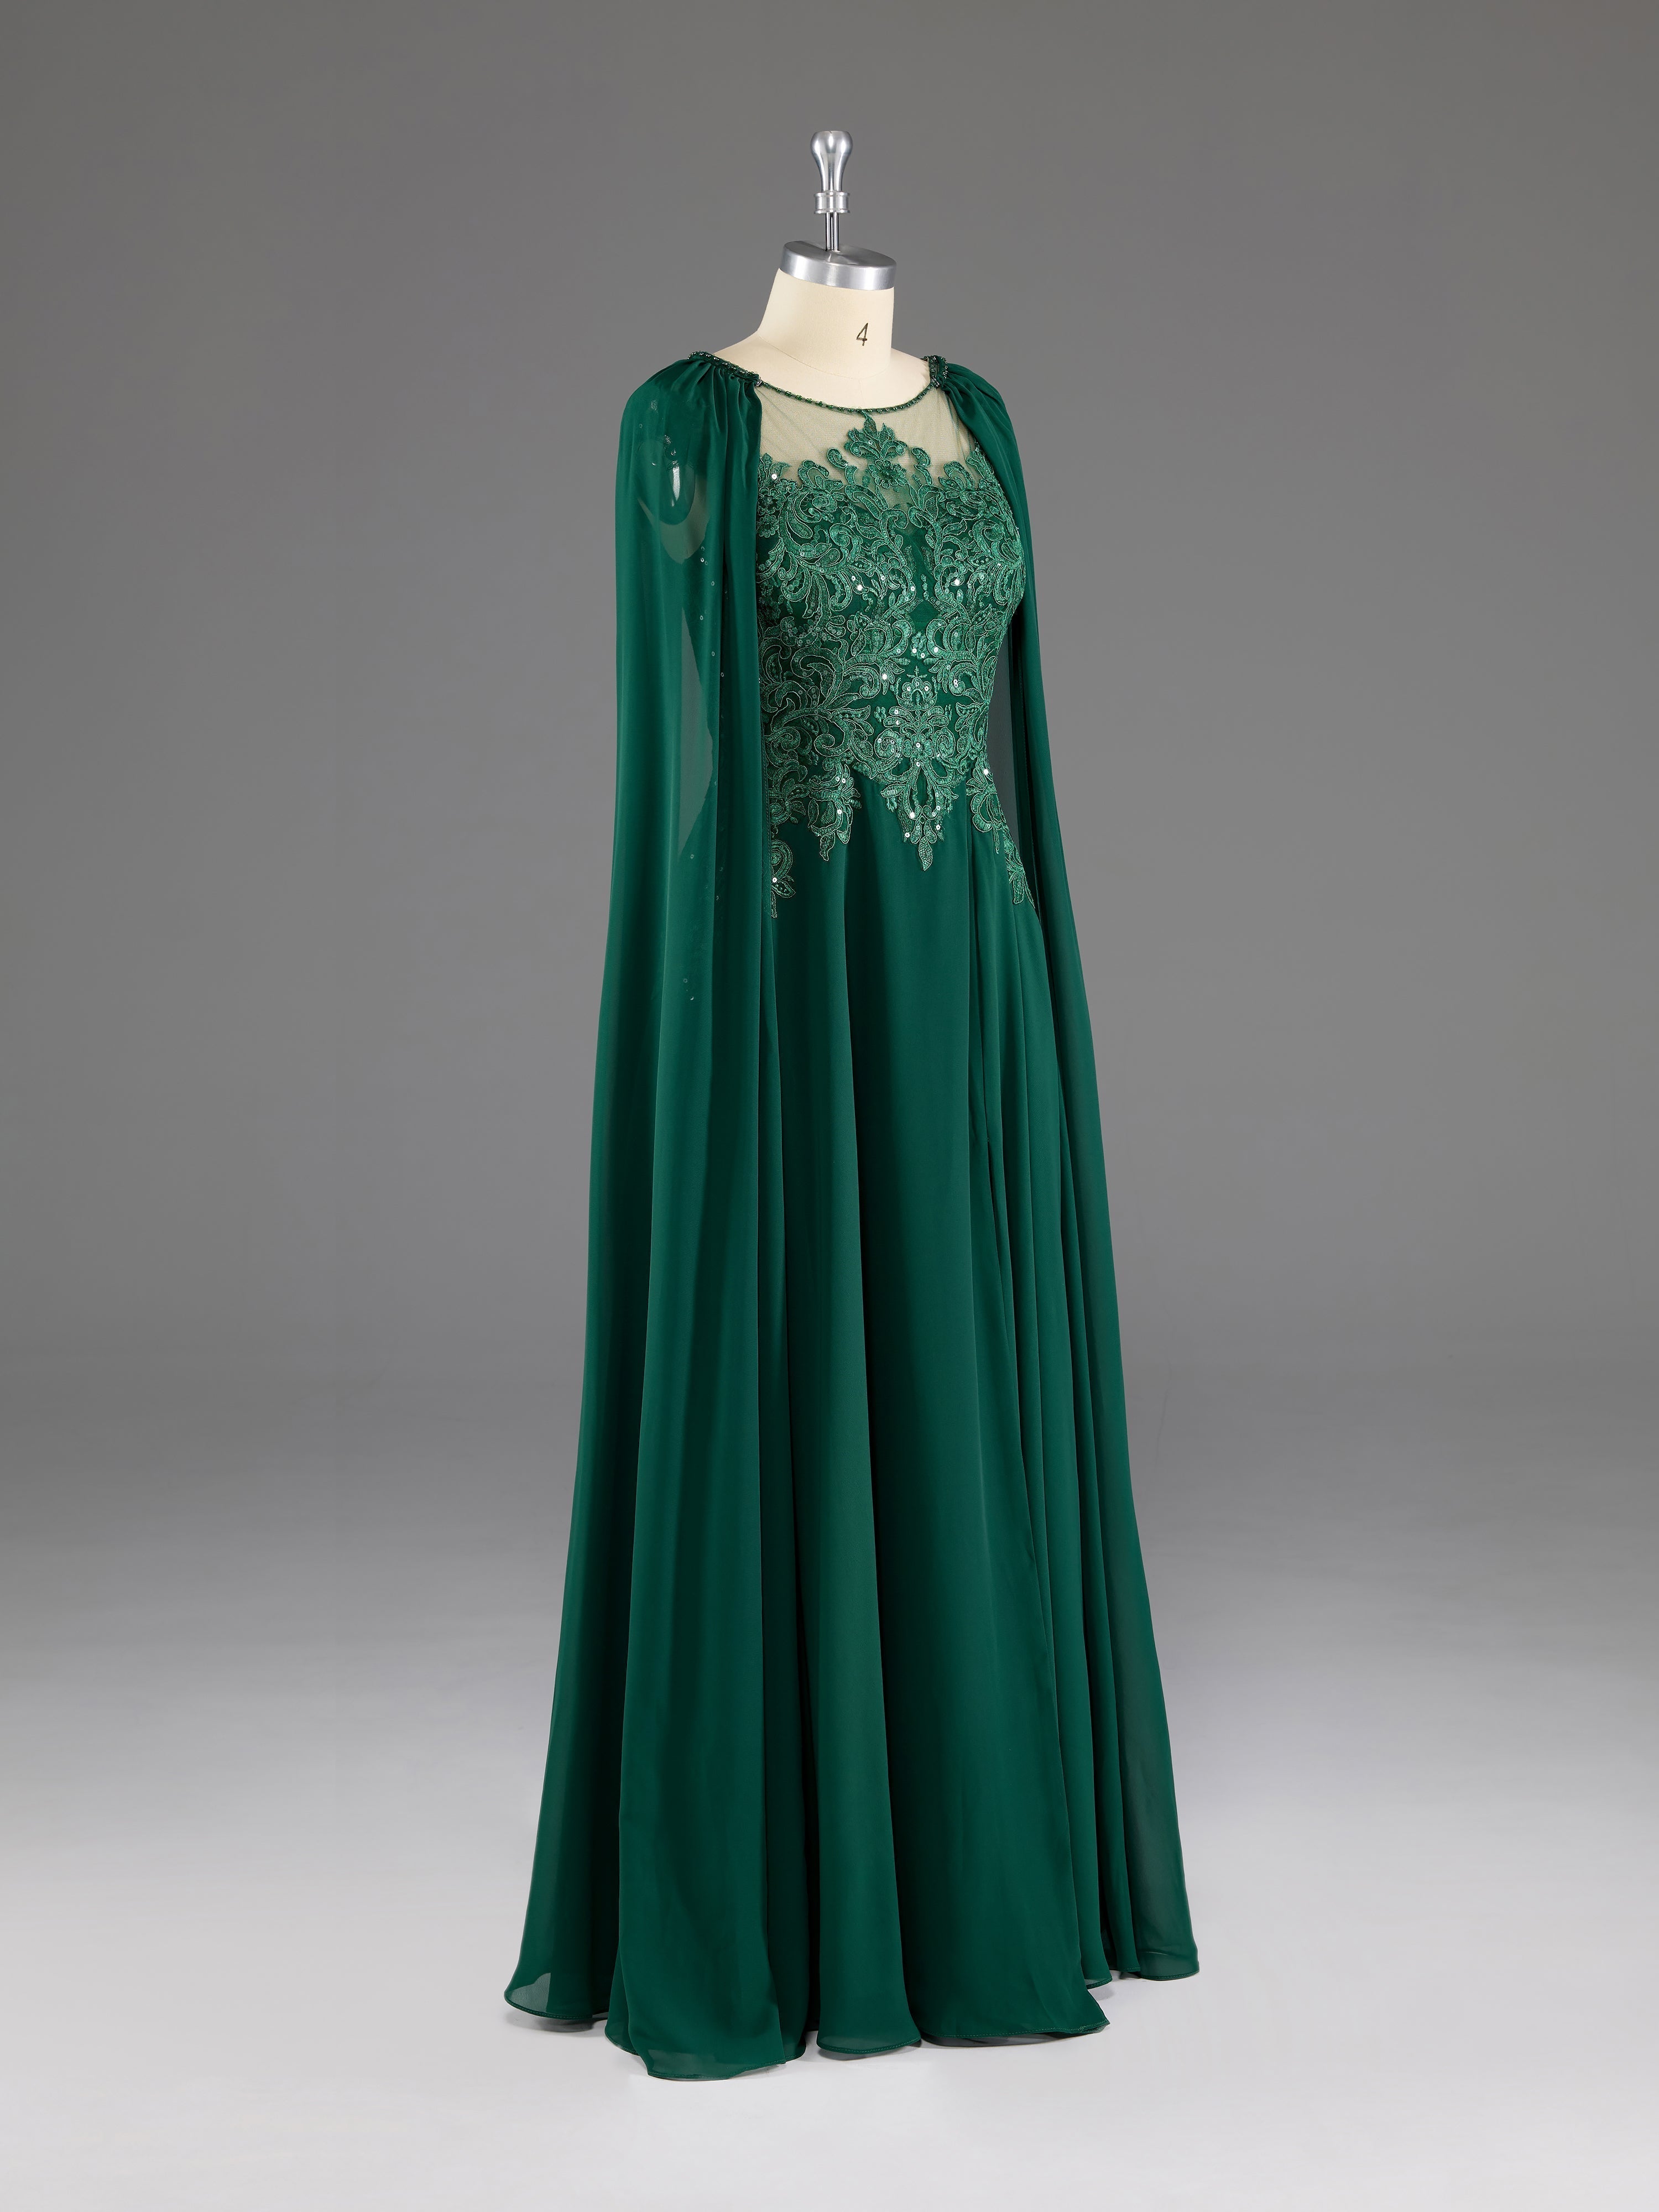 Prom Dress Chiffon, Dark Green A-Line Lace Appliques Chiffon Prom Dress